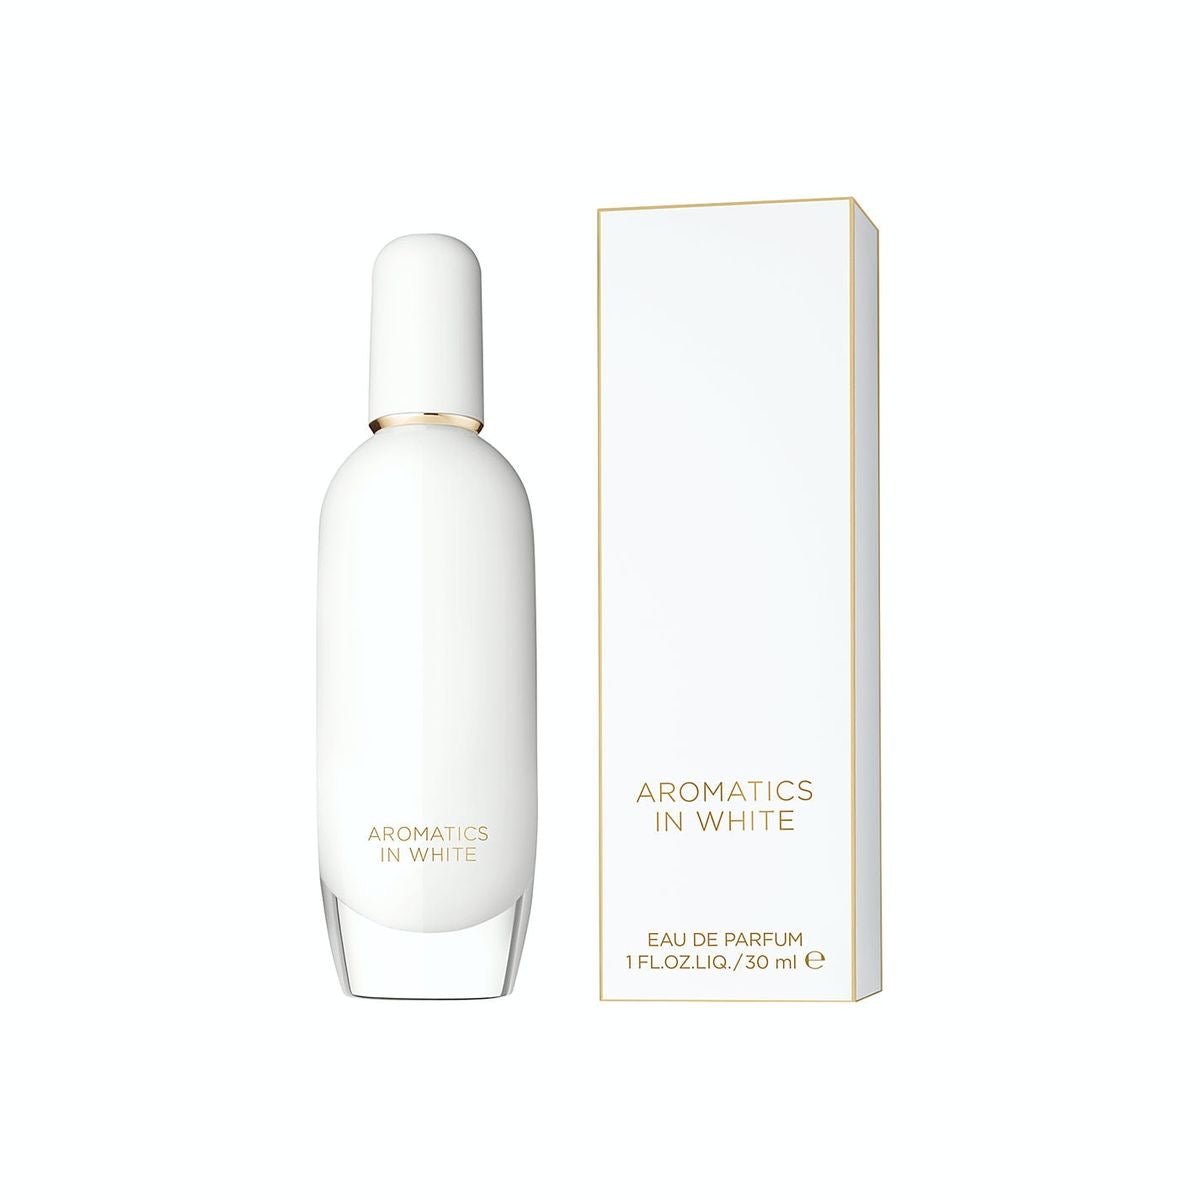 Clinique Aromatics White EDP | My Perfume Shop Australia